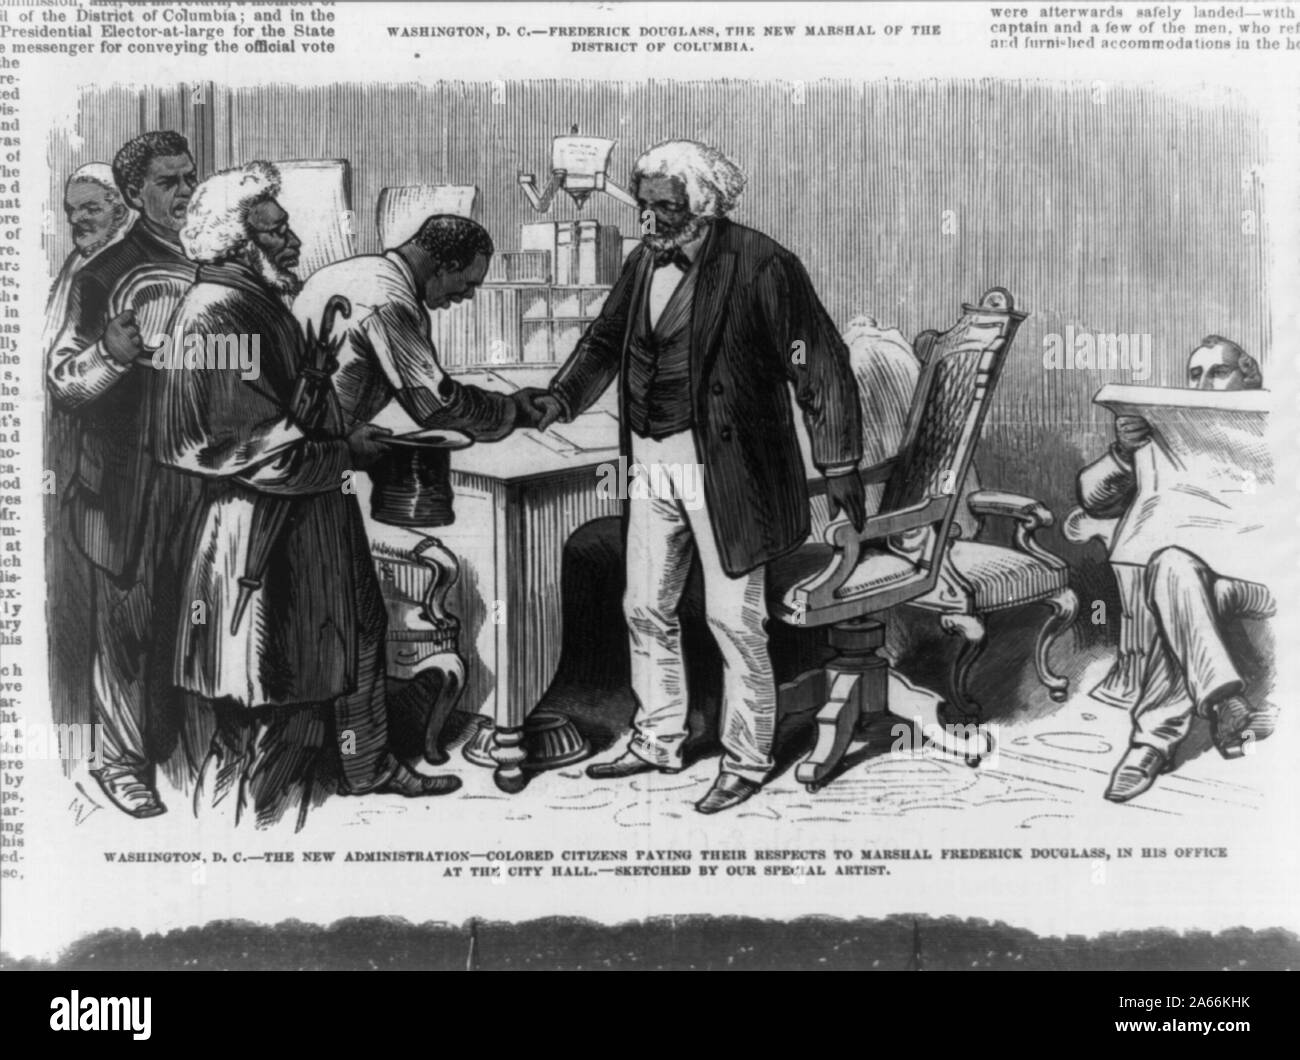 Washington, D.C. -- die neue Administration - farbige Bürger zahlen, um ihren Respekt zu Marshall Frederick Douglass, in seinem Büro im Rathaus/skizziert, die von unseren speziellen Künstler. Stockfoto